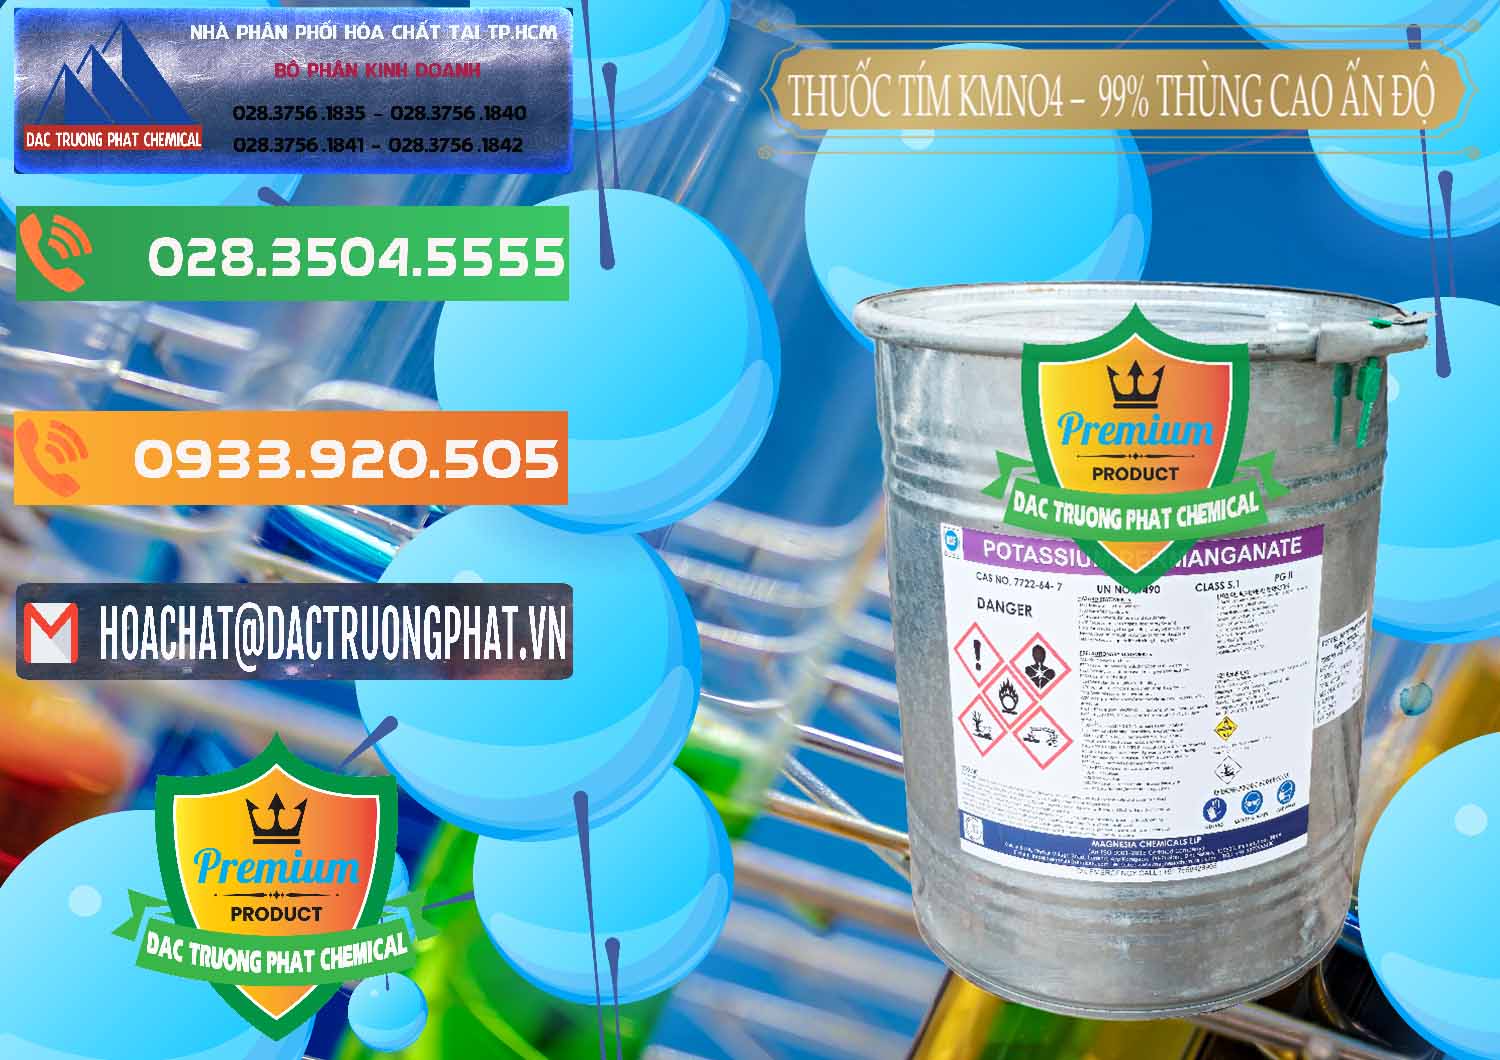 Nơi cung cấp - bán Thuốc Tím - KMNO4 Thùng Cao 99% Magnesia Chemicals Ấn Độ India - 0164 - Nhà cung cấp và kinh doanh hóa chất tại TP.HCM - hoachatxulynuoc.com.vn